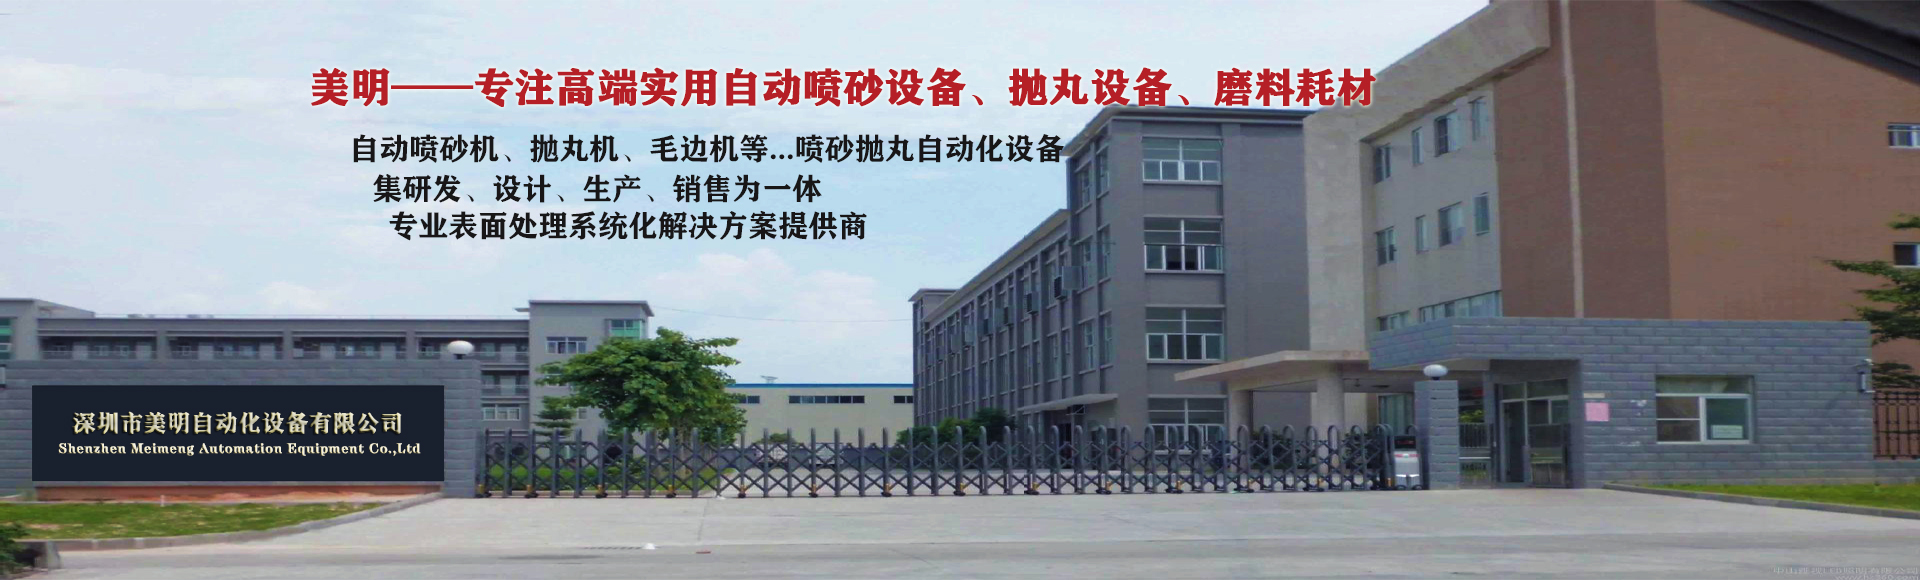 深圳市美明自动化设备有限公司